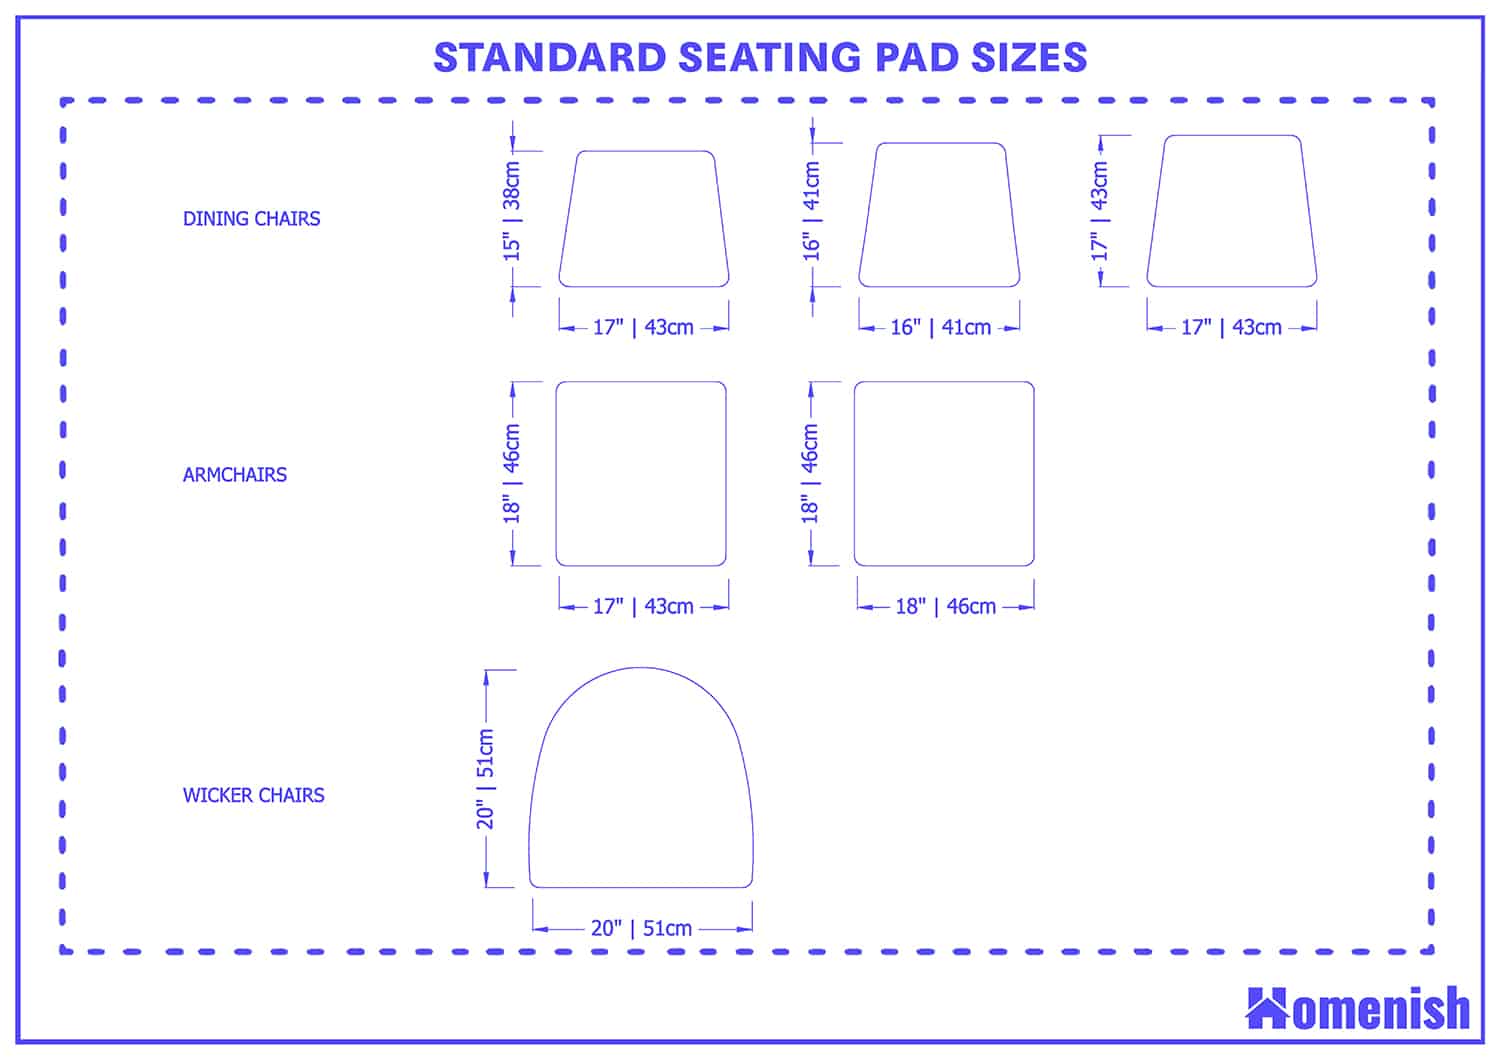 標準座椅墊尺寸適用於不同類型的椅子